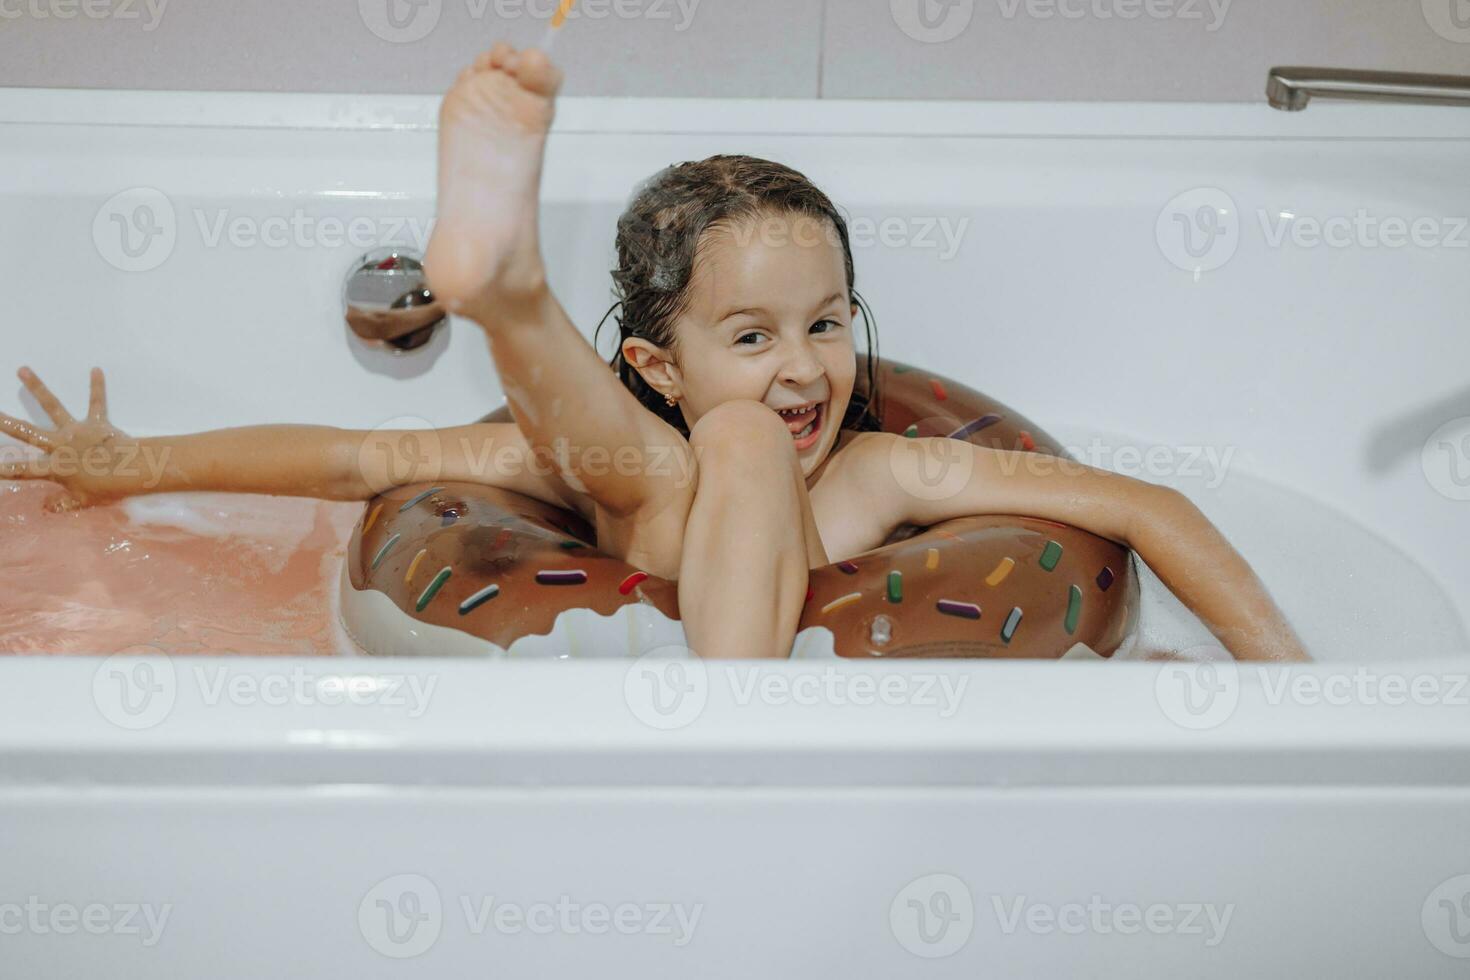 klein, lachend, mooi donker haar meisje met lang haar, kind baadt, wast in een wit bad met schuim. pret foto. foto